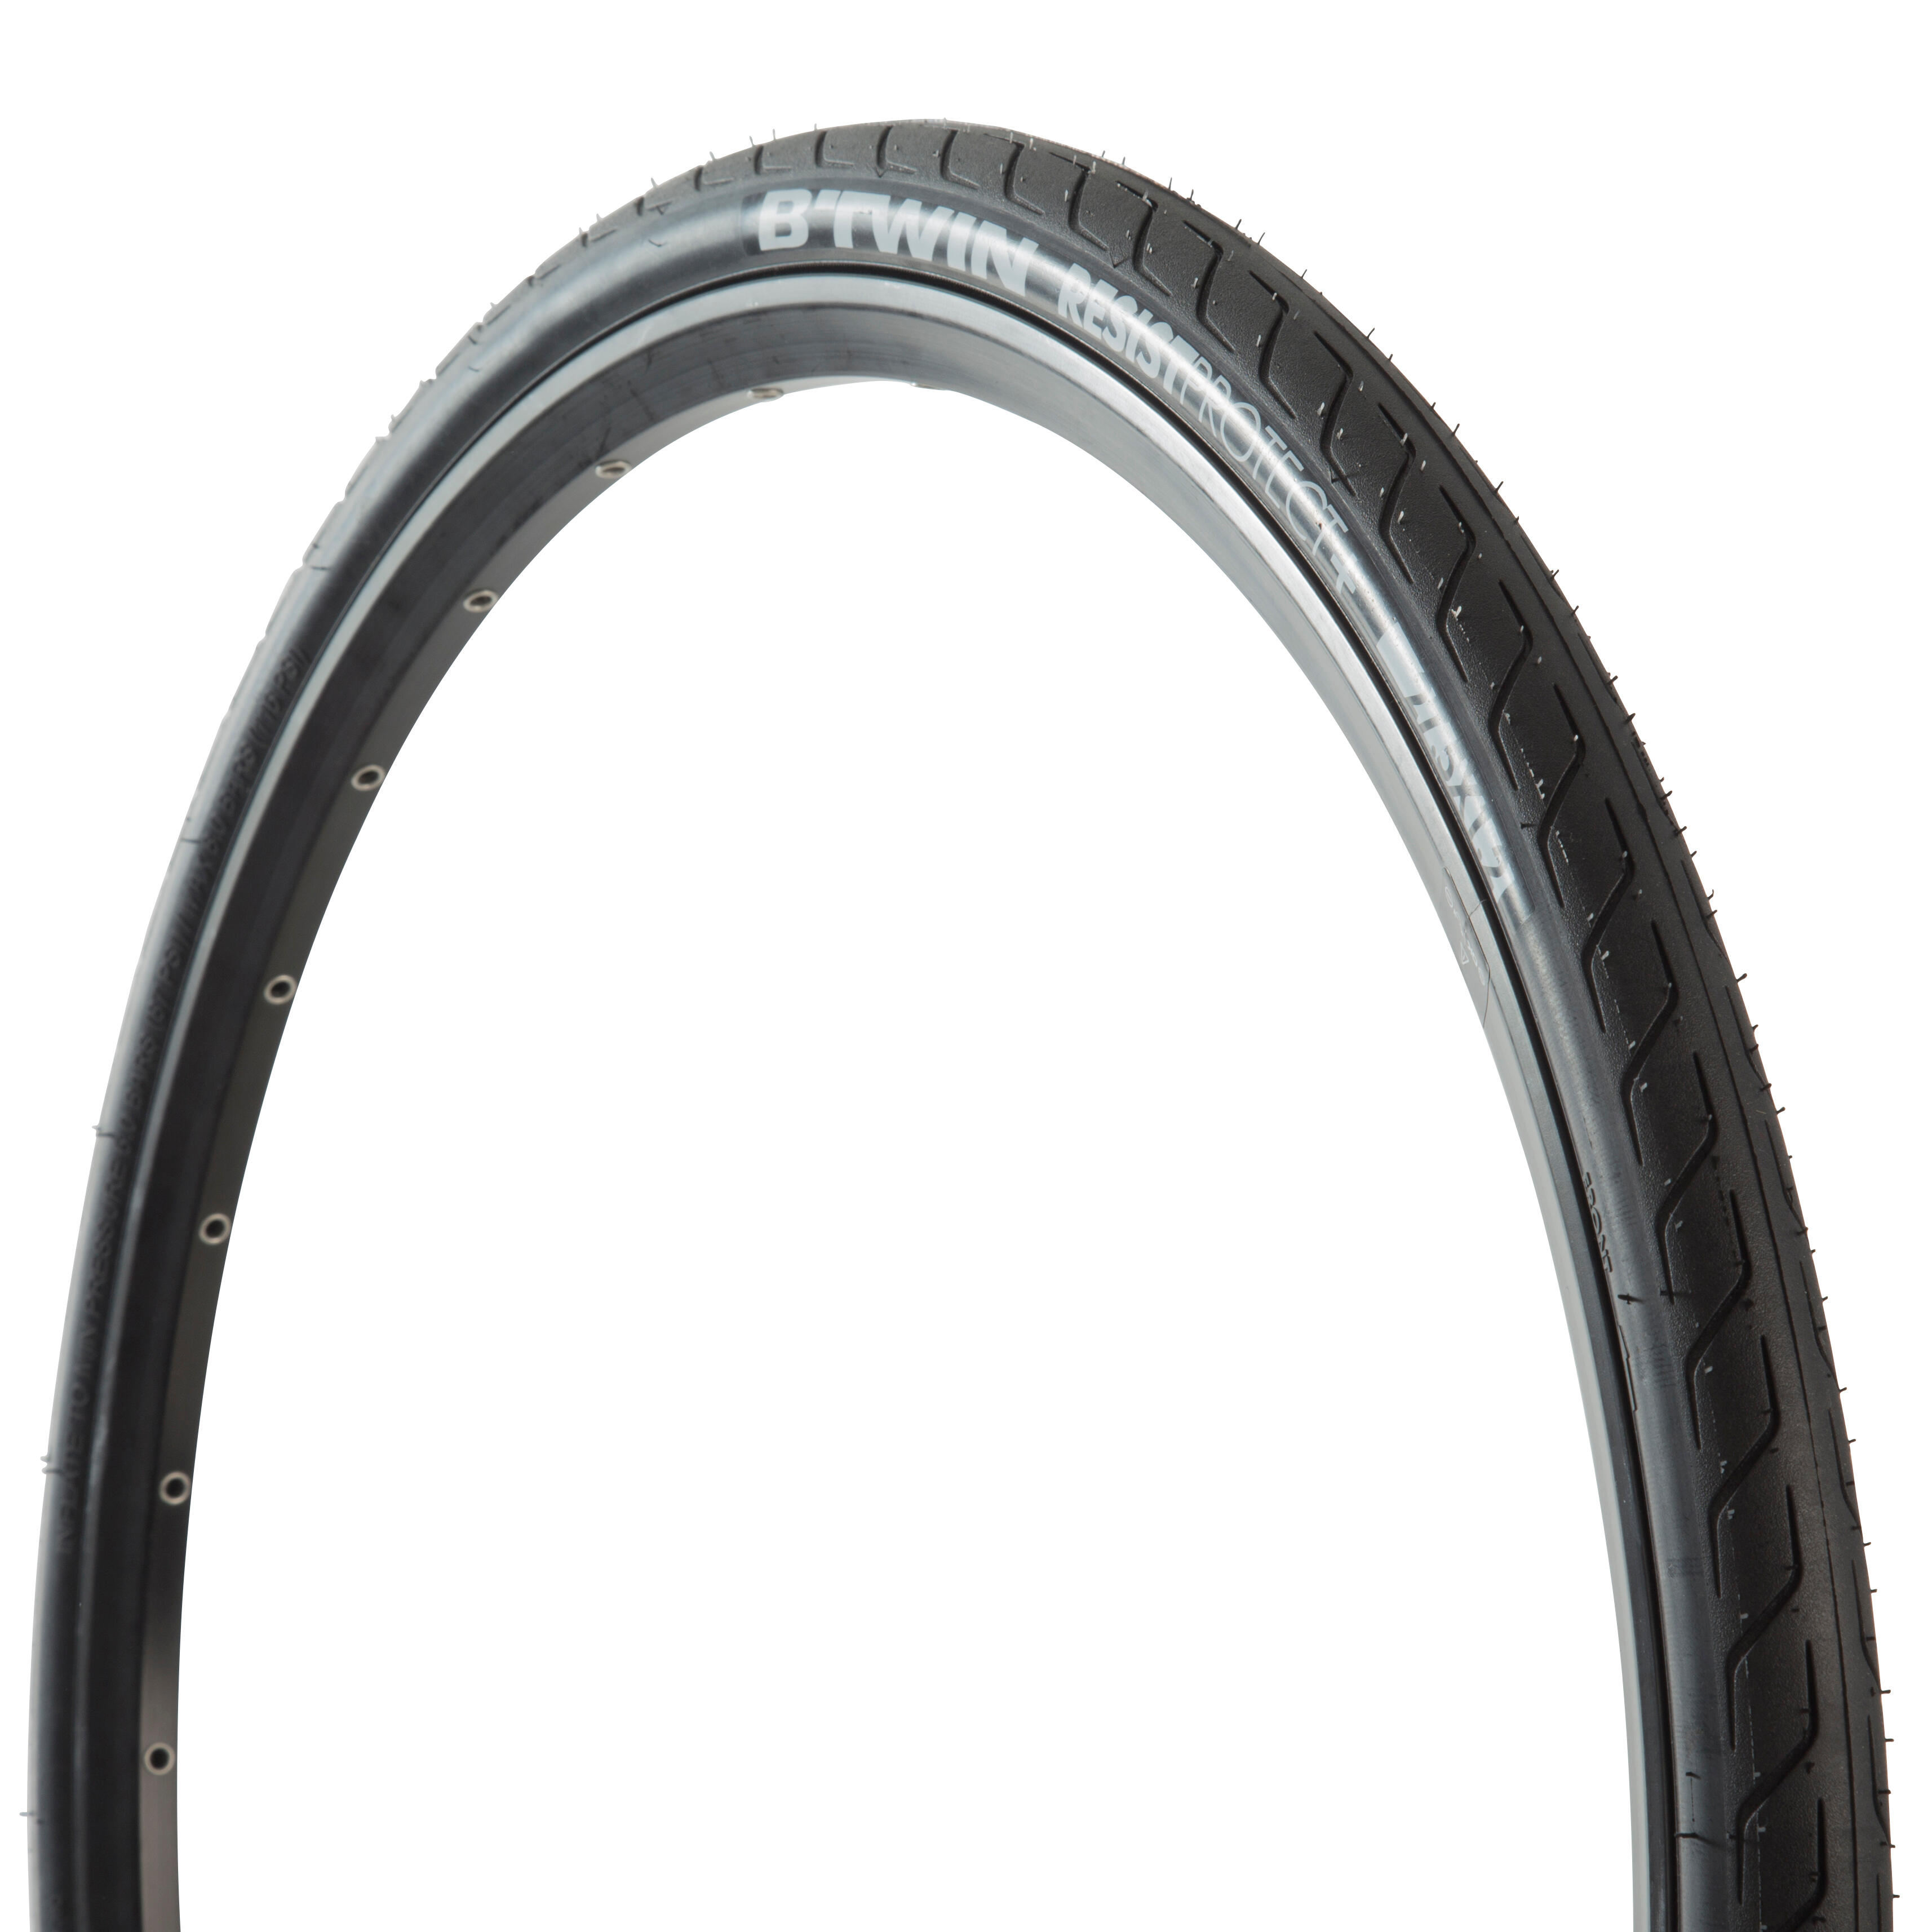 27.5 slick tyres